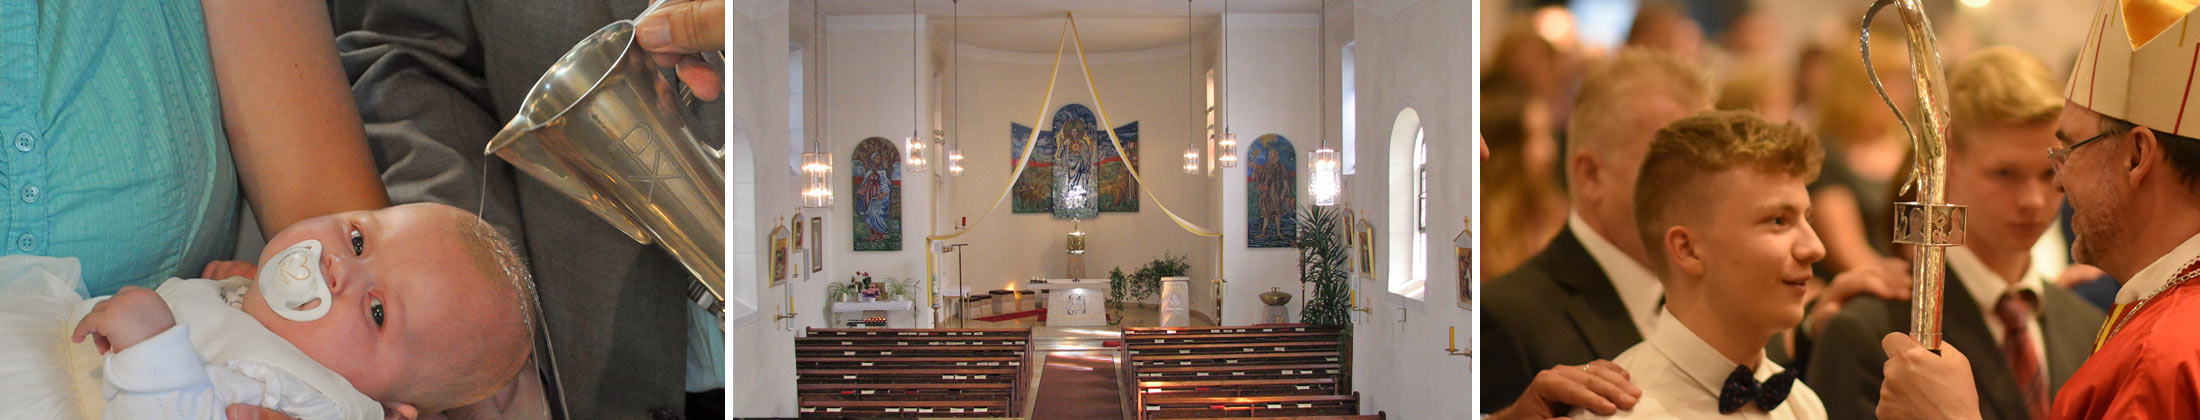 Sliderbild Pfarrei Eschlkam